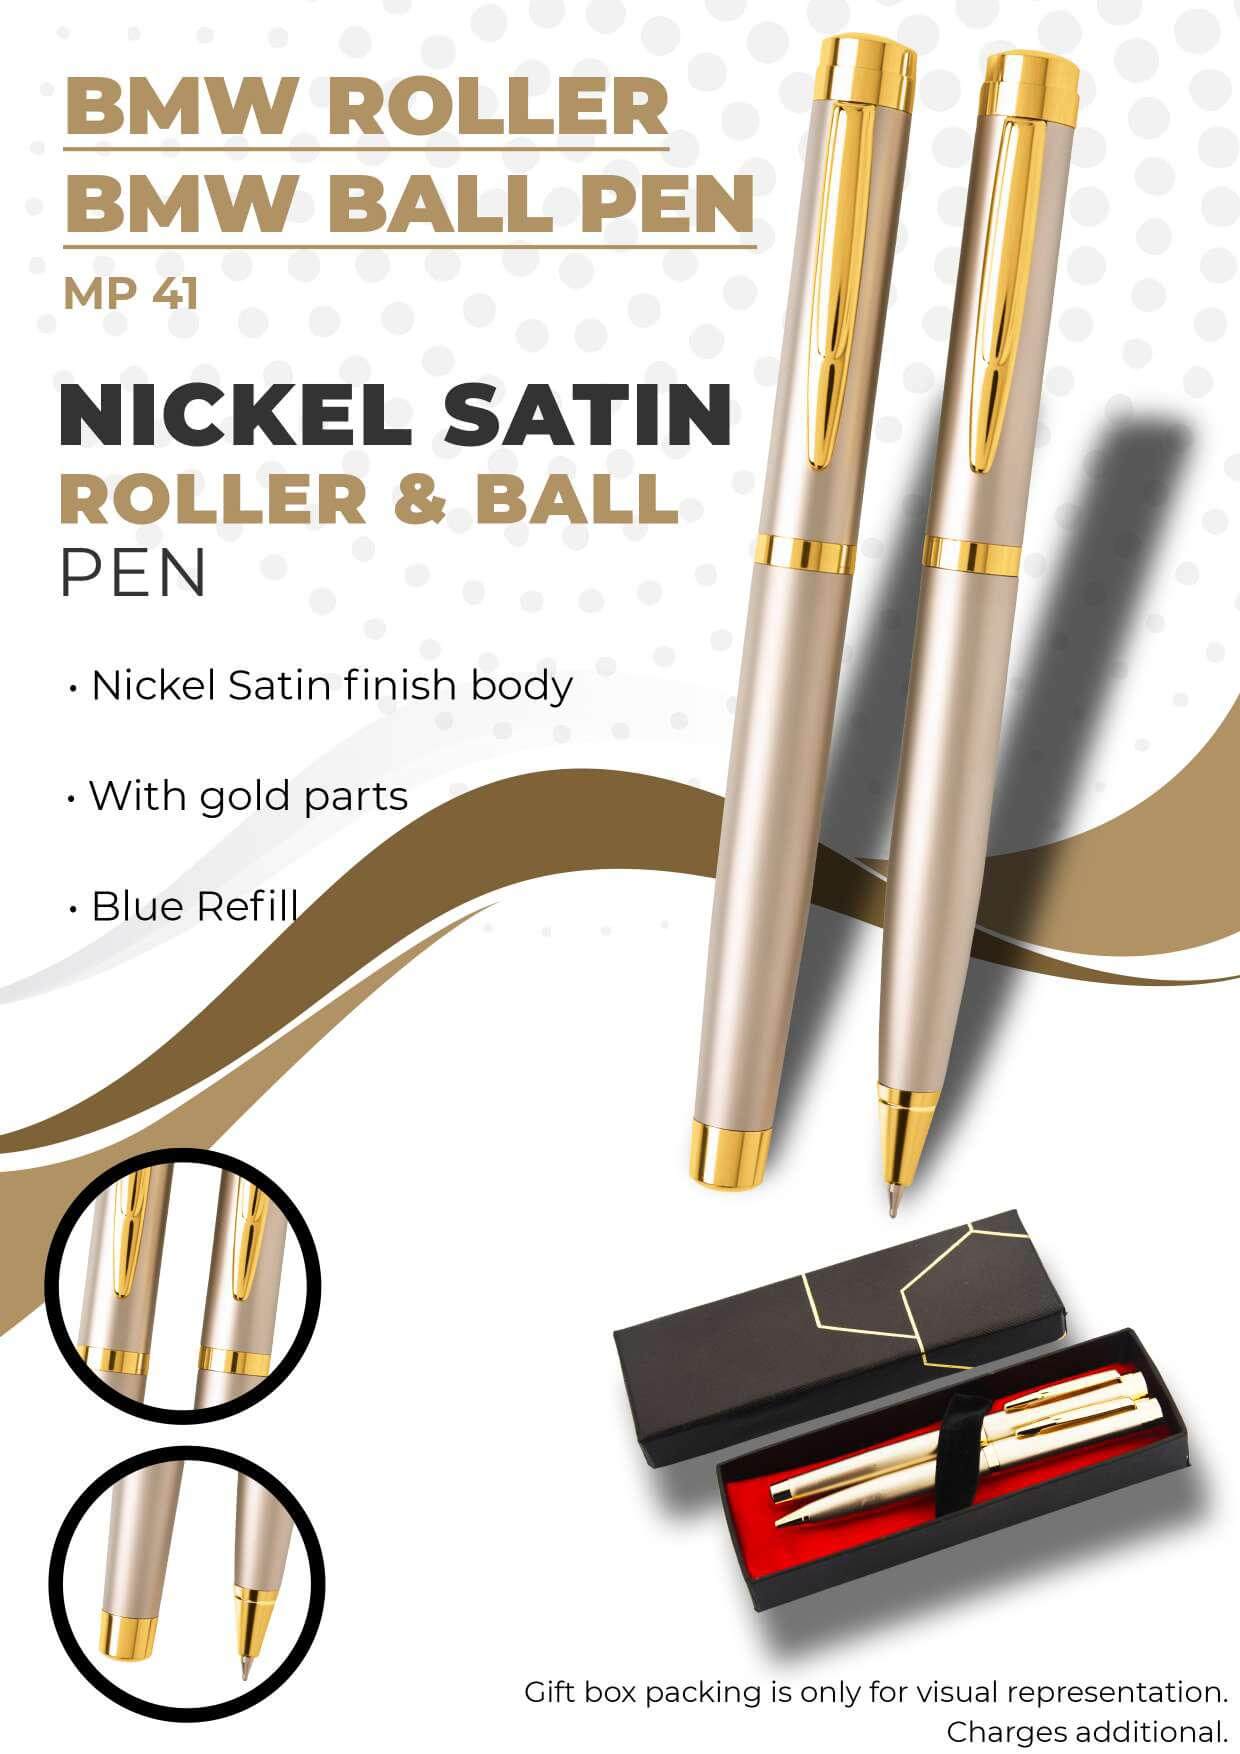 Nickel Satin Roller & Ball Pen